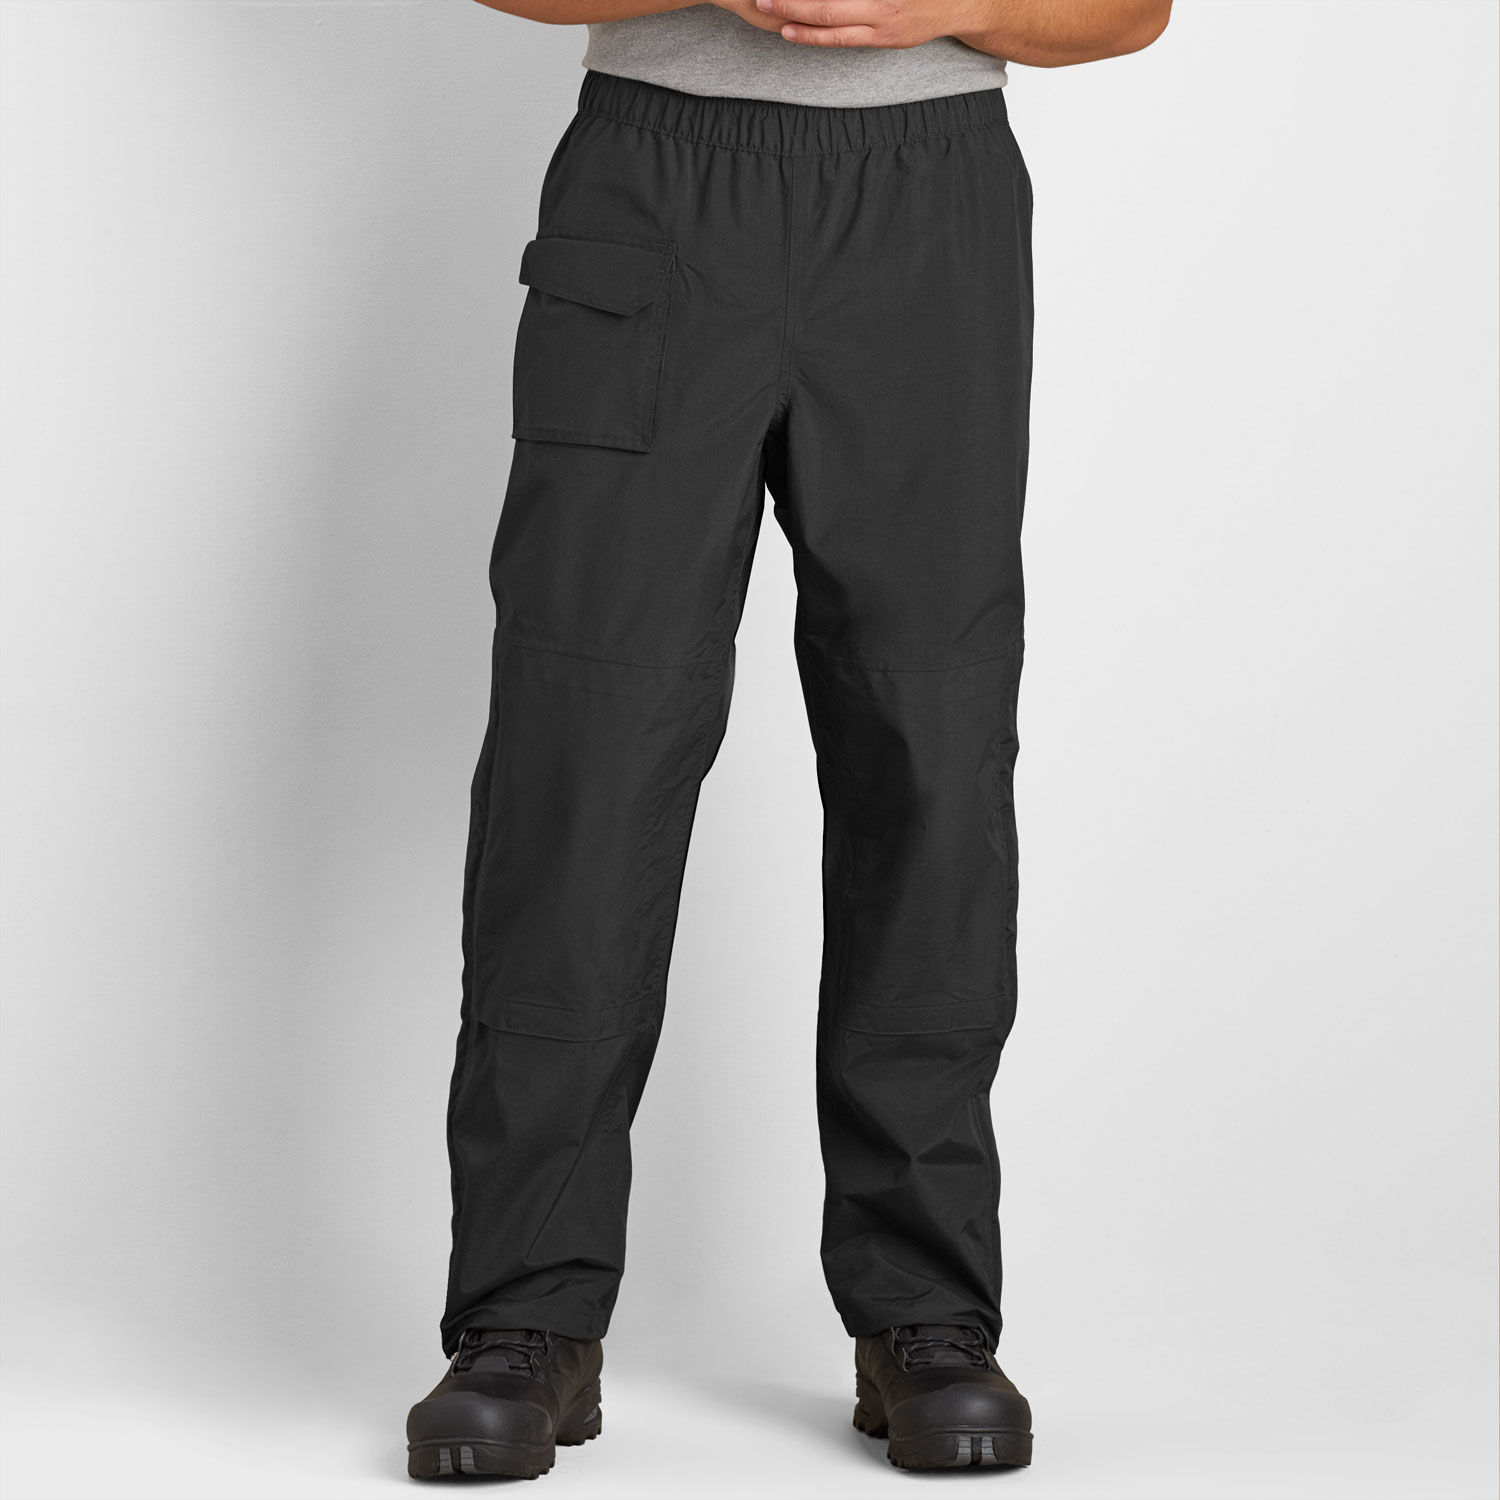 REI Co-op Essential Rain Pants - Men's Tall Sizes | REI Co-op